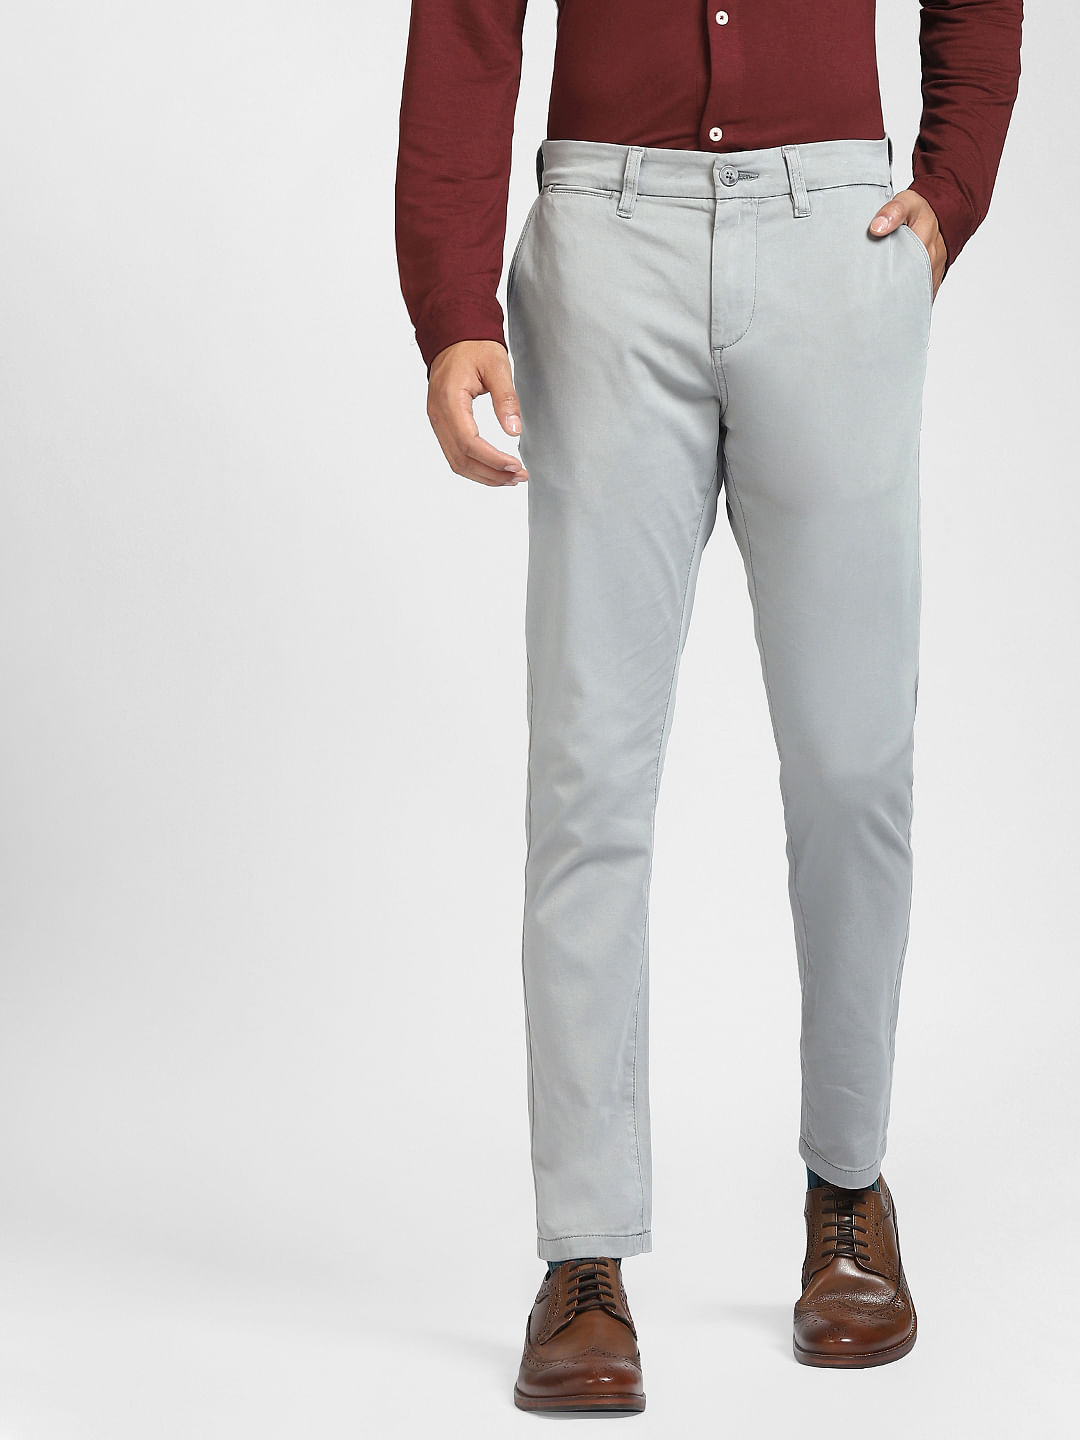 Buy Men Grey Slim Fit Pants Online In India